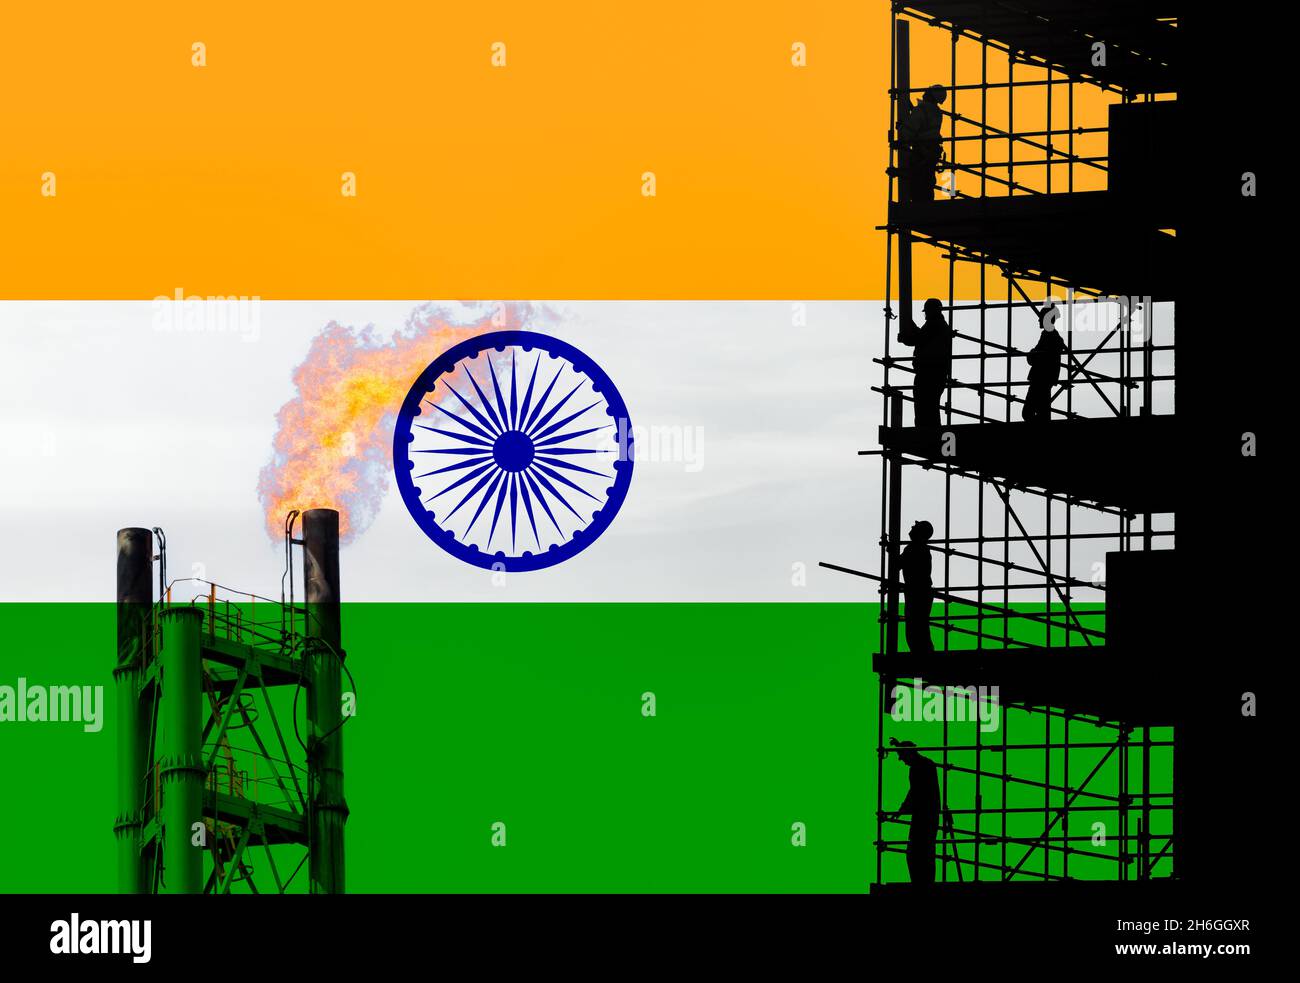 Flagge Indiens mit Gasflackern und Baustelle für Chemieanlagen. Klimawandel, CO2-Emissionen, Netto-Null-Emissionen 2070, globale Erwärmung... Stockfoto